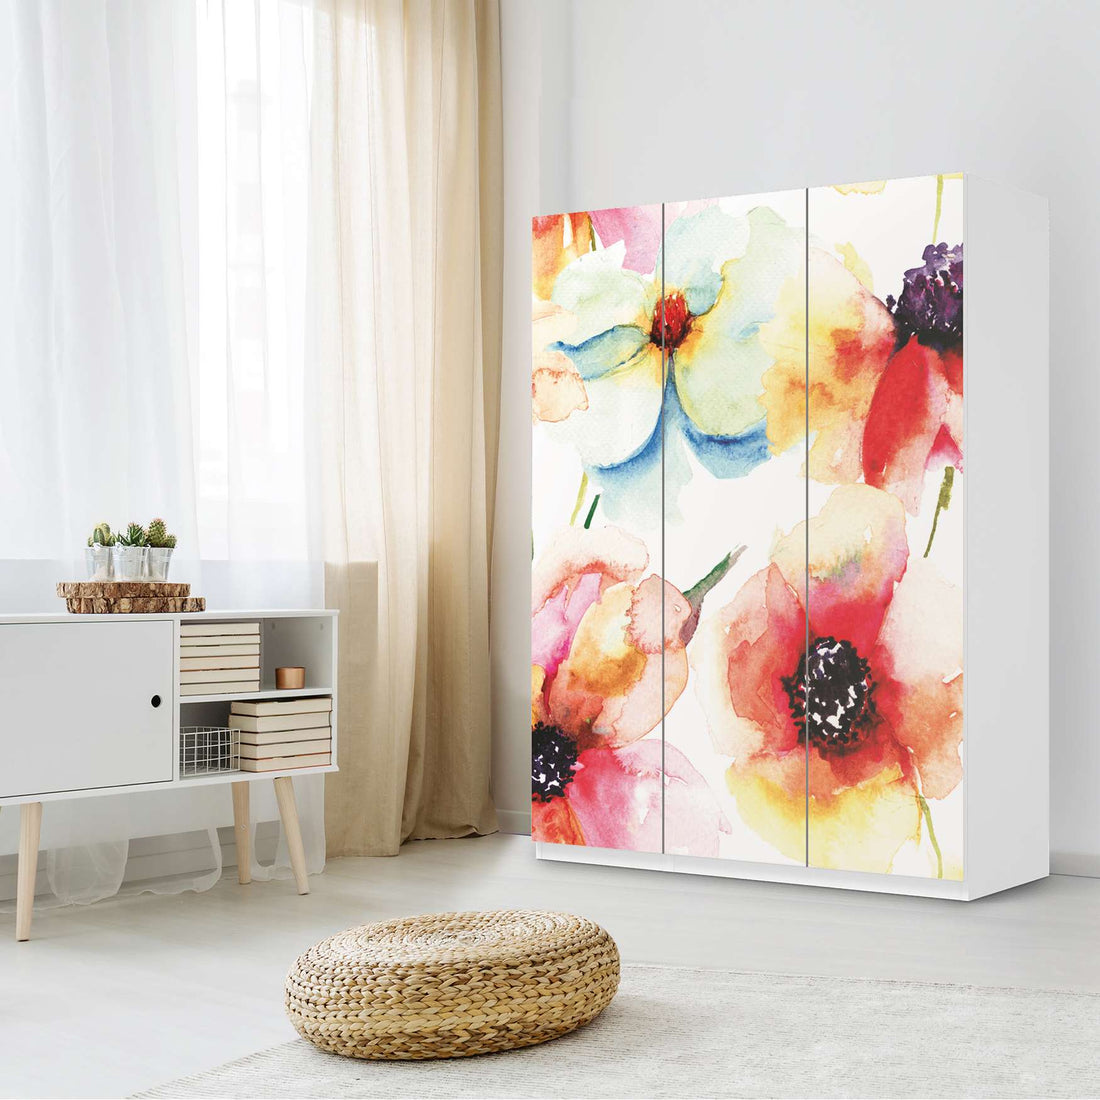 Folie für Möbel Water Color Flowers - IKEA Pax Schrank 201 cm Höhe - 3 Türen - Schlafzimmer